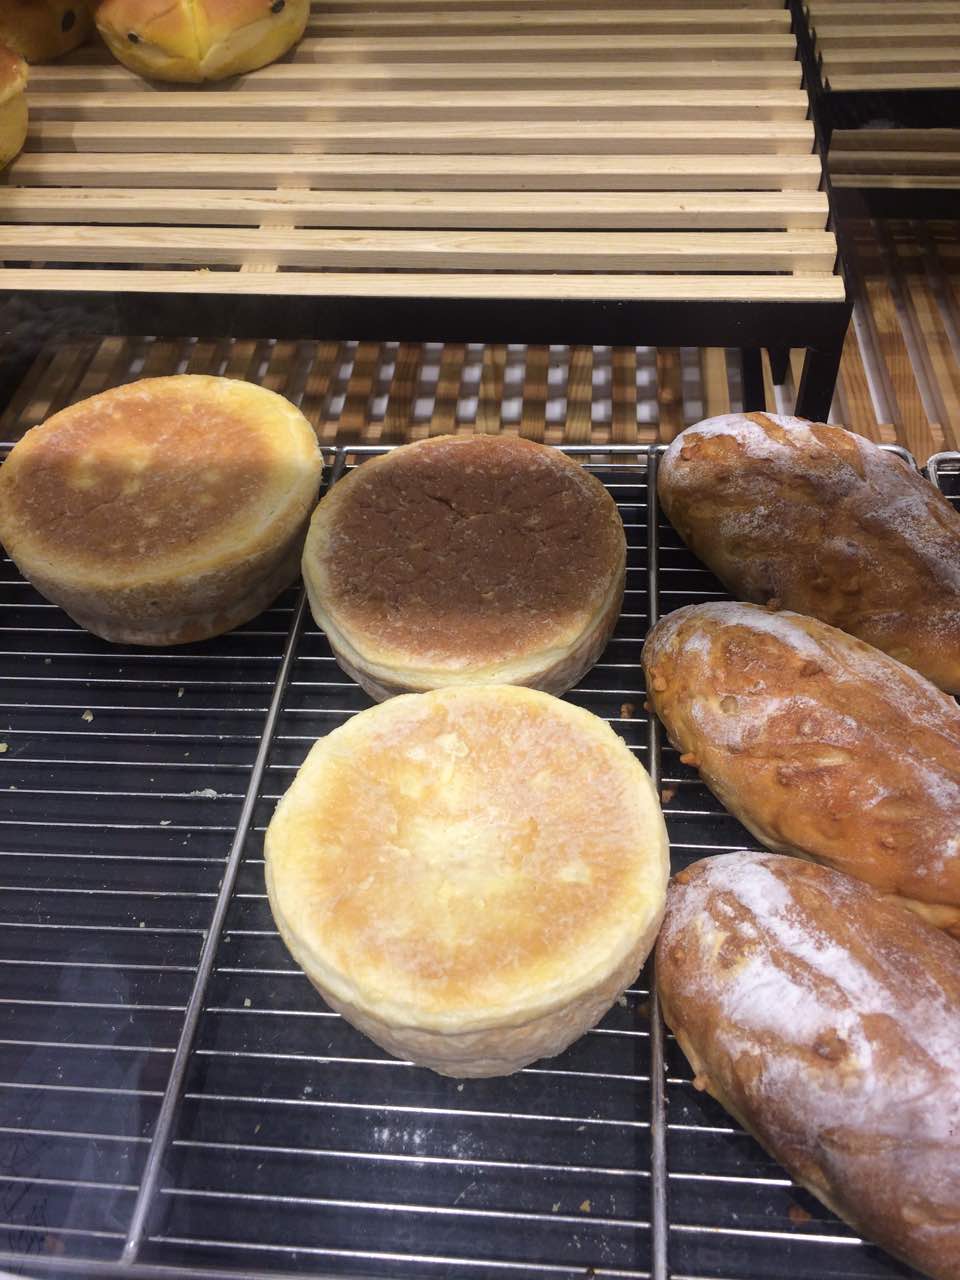 【携程美食林】芜湖超港烘焙(银泰店)餐馆,味道不错,尤其是黑面包